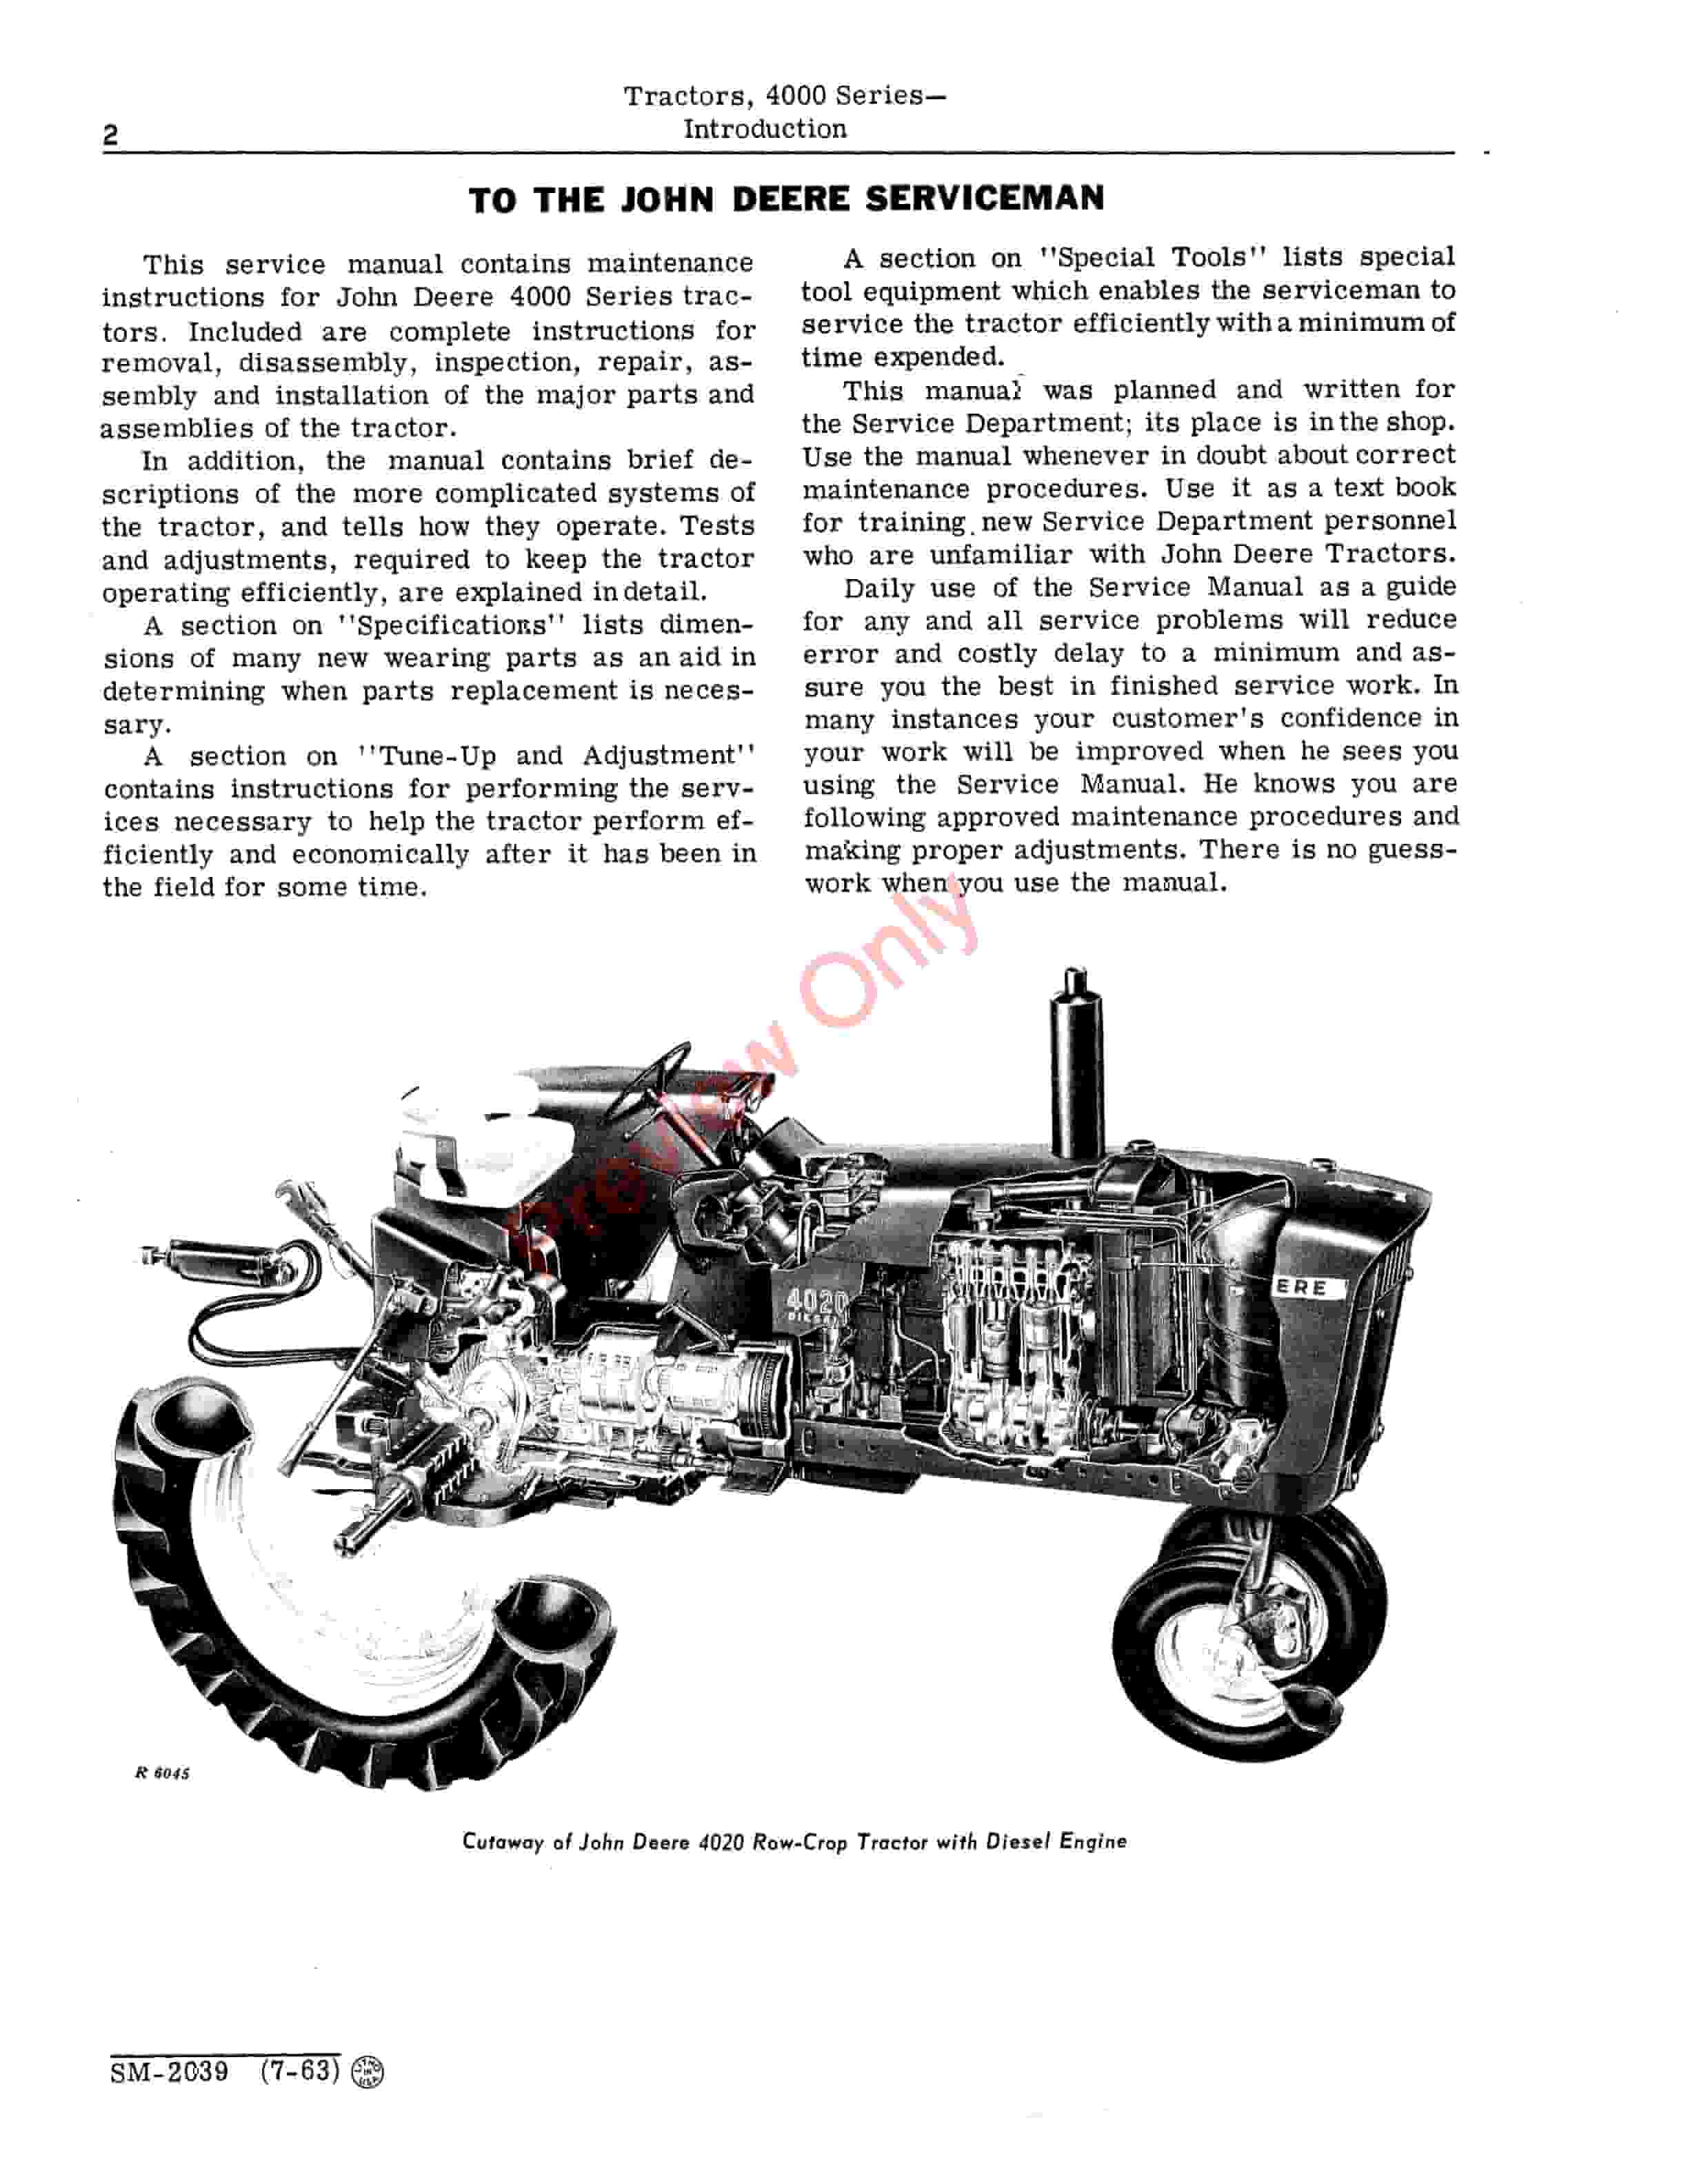 John Deere 4000 Series Tractors Service Manual SM2039 01APR67 4